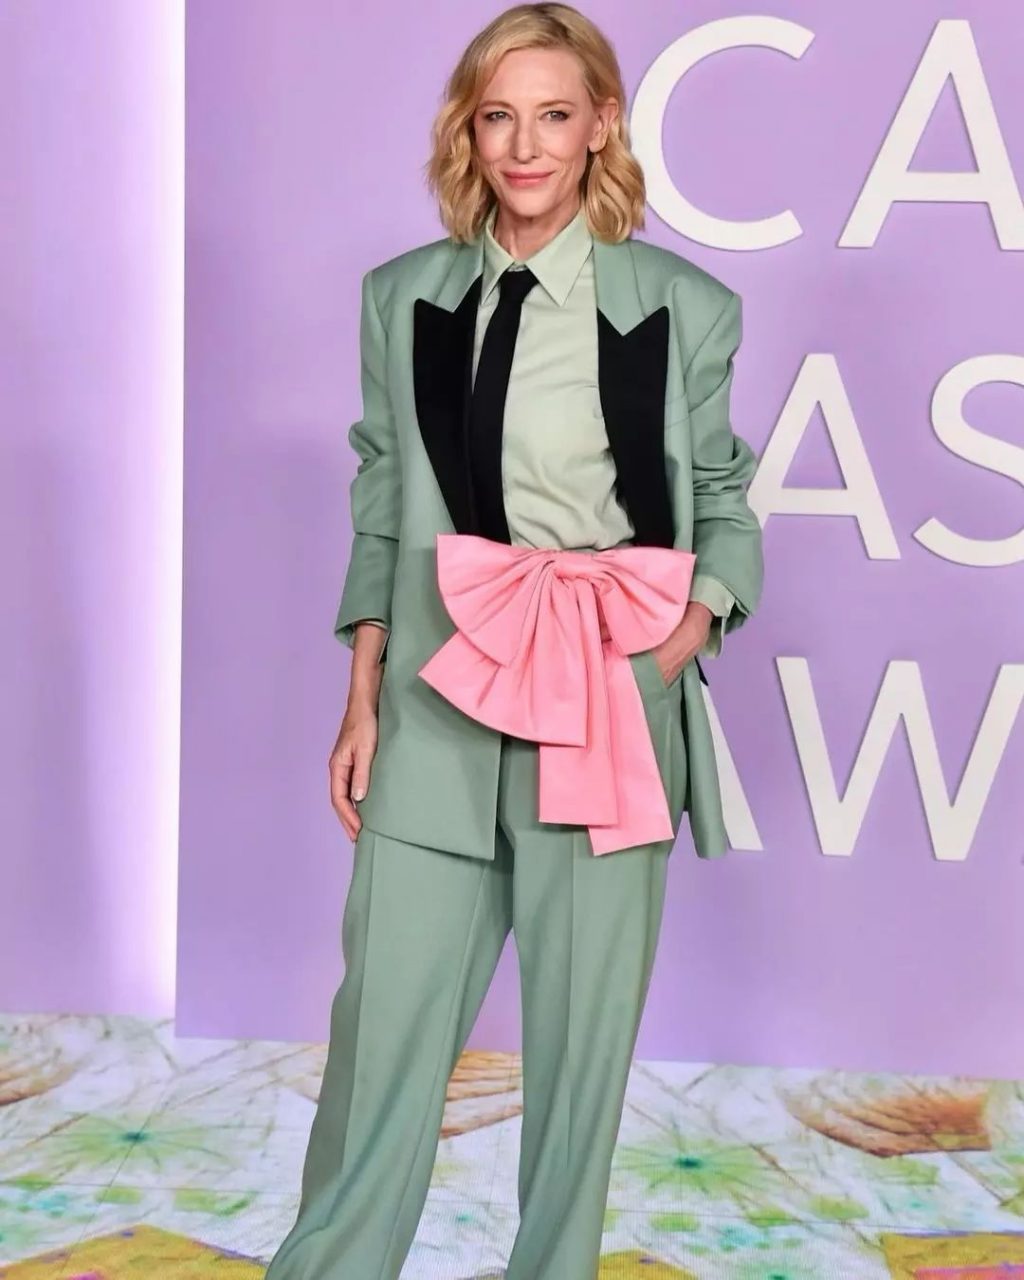 Cate Blanchett kết hợp kiểu tóc xoăn nhẹ cùng bộ vest cá tính.